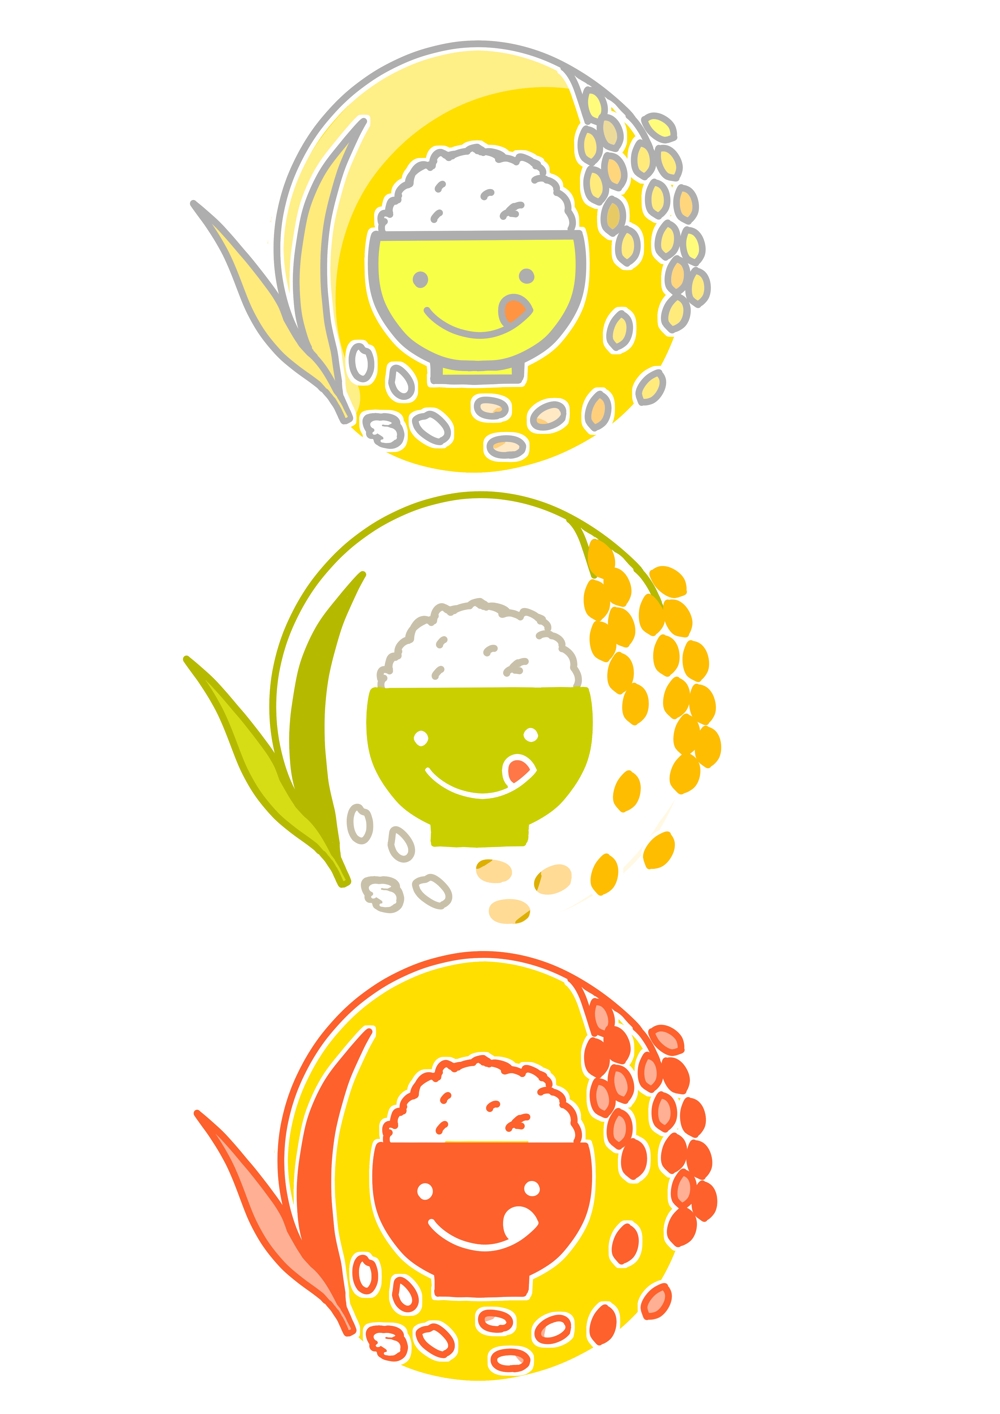 米飯供給会社のロゴデザイン